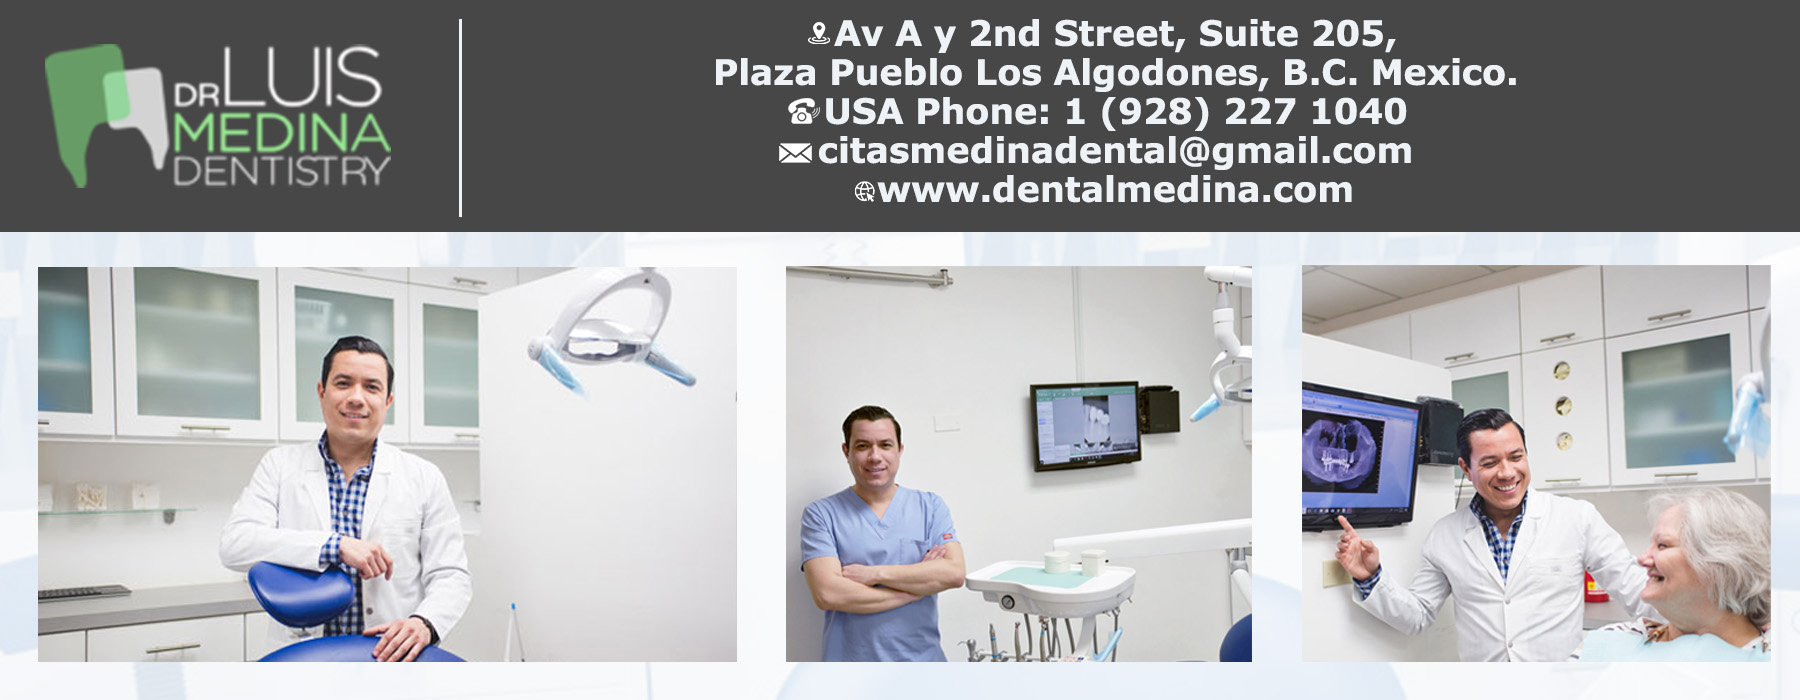 Medina Dental Office